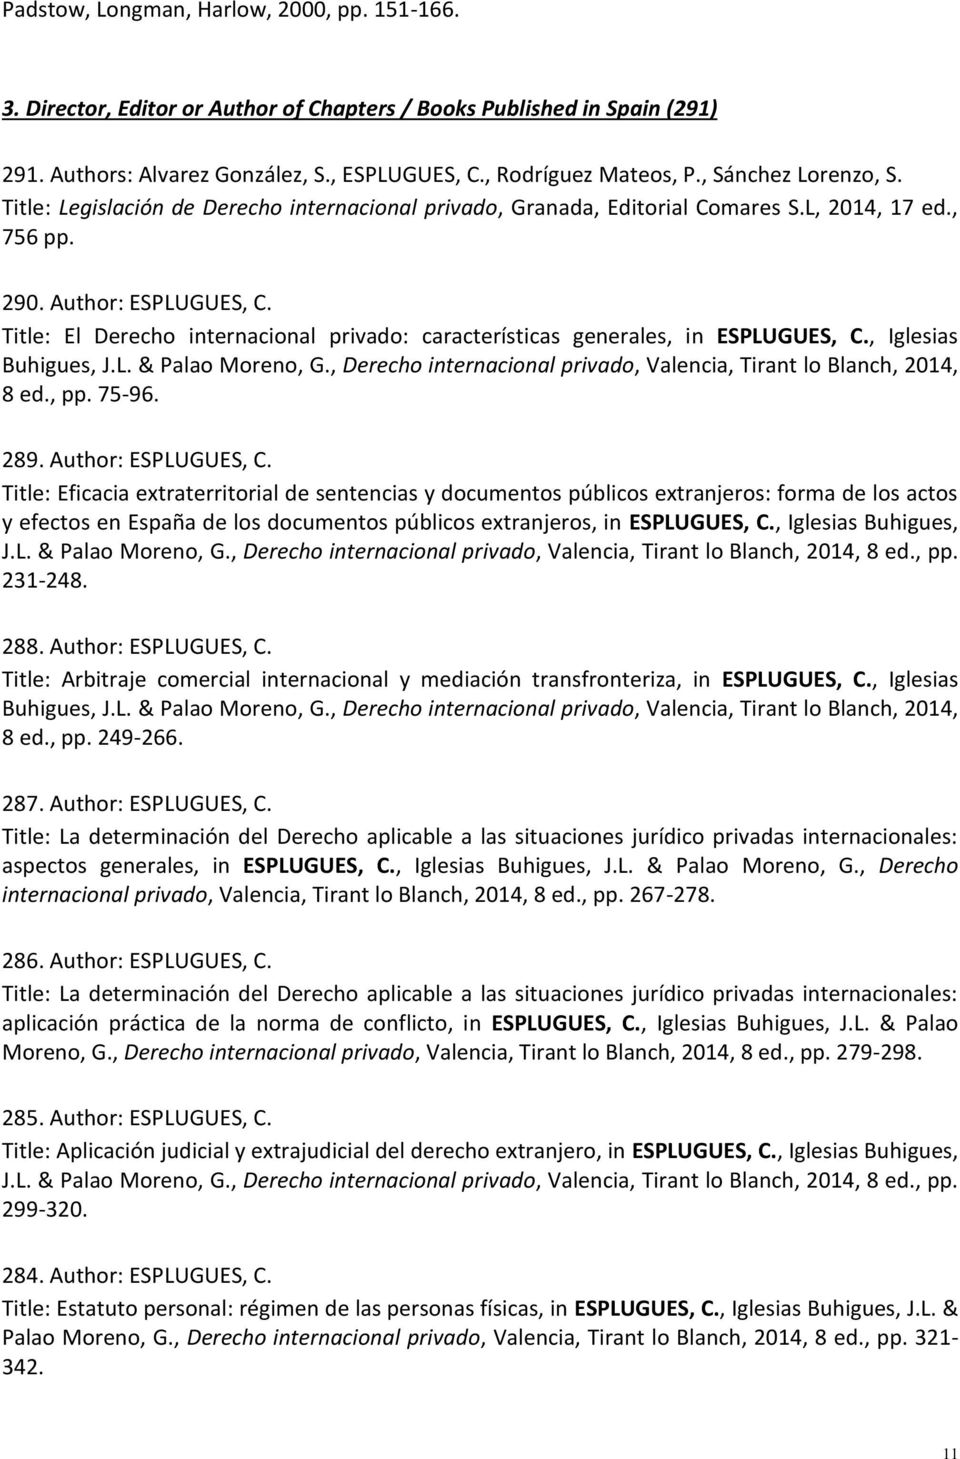 Title: El Derecho internacional privado: características generales, in ESPLUGUES, C., Iglesias Buhigues, J.L. & Palao Moreno, G., Derecho internacional privado, Valencia, Tirant lo Blanch, 2014, 8 ed.